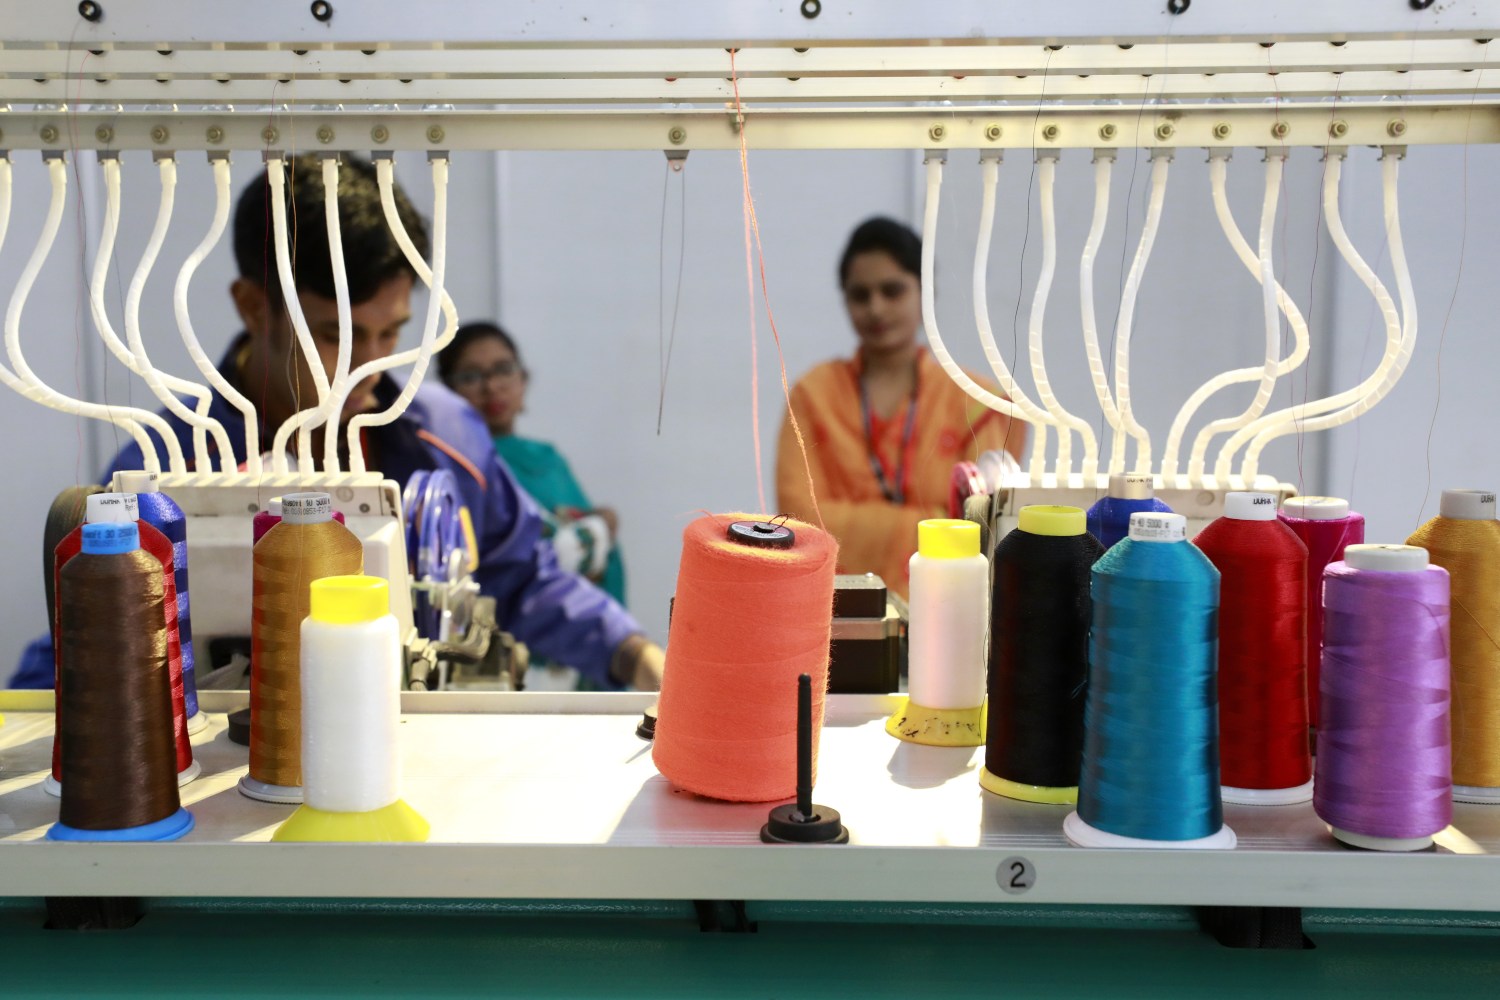 Dhaka, BANGLADESH - NOVEMBER 30, 2017: Readymade garments product buyers and sellers visit Bangladesh International Garments Textile Expo at Bashundhara International Convention City in Dhaka. S